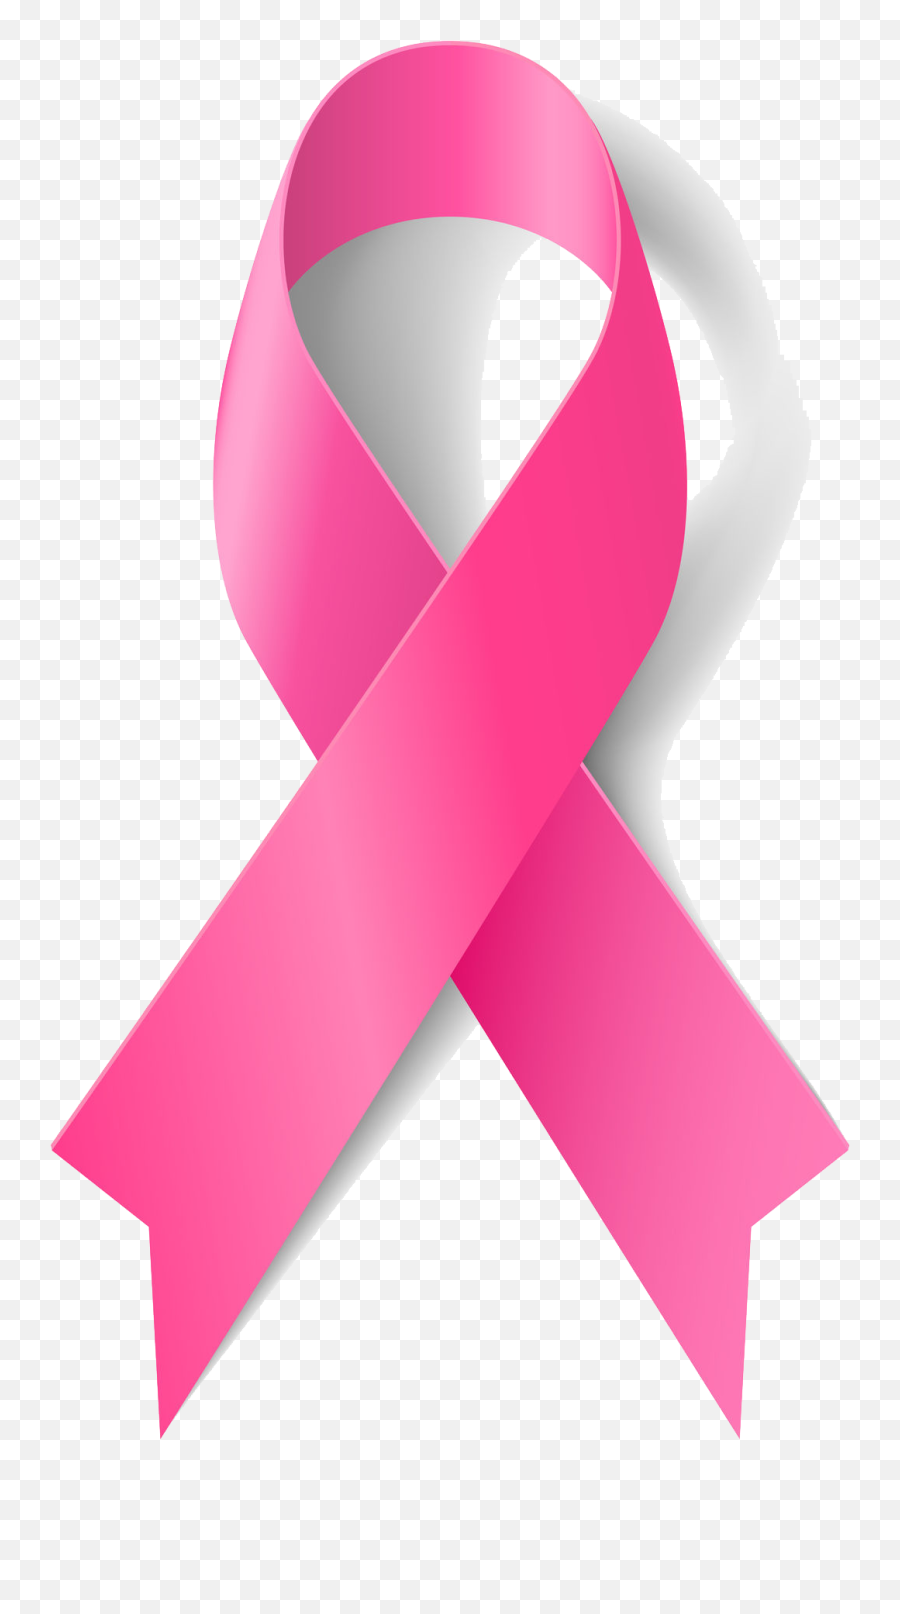 Pin - Simbolo Del Cancer De Mama Emoji,Breast Cancer Emoji